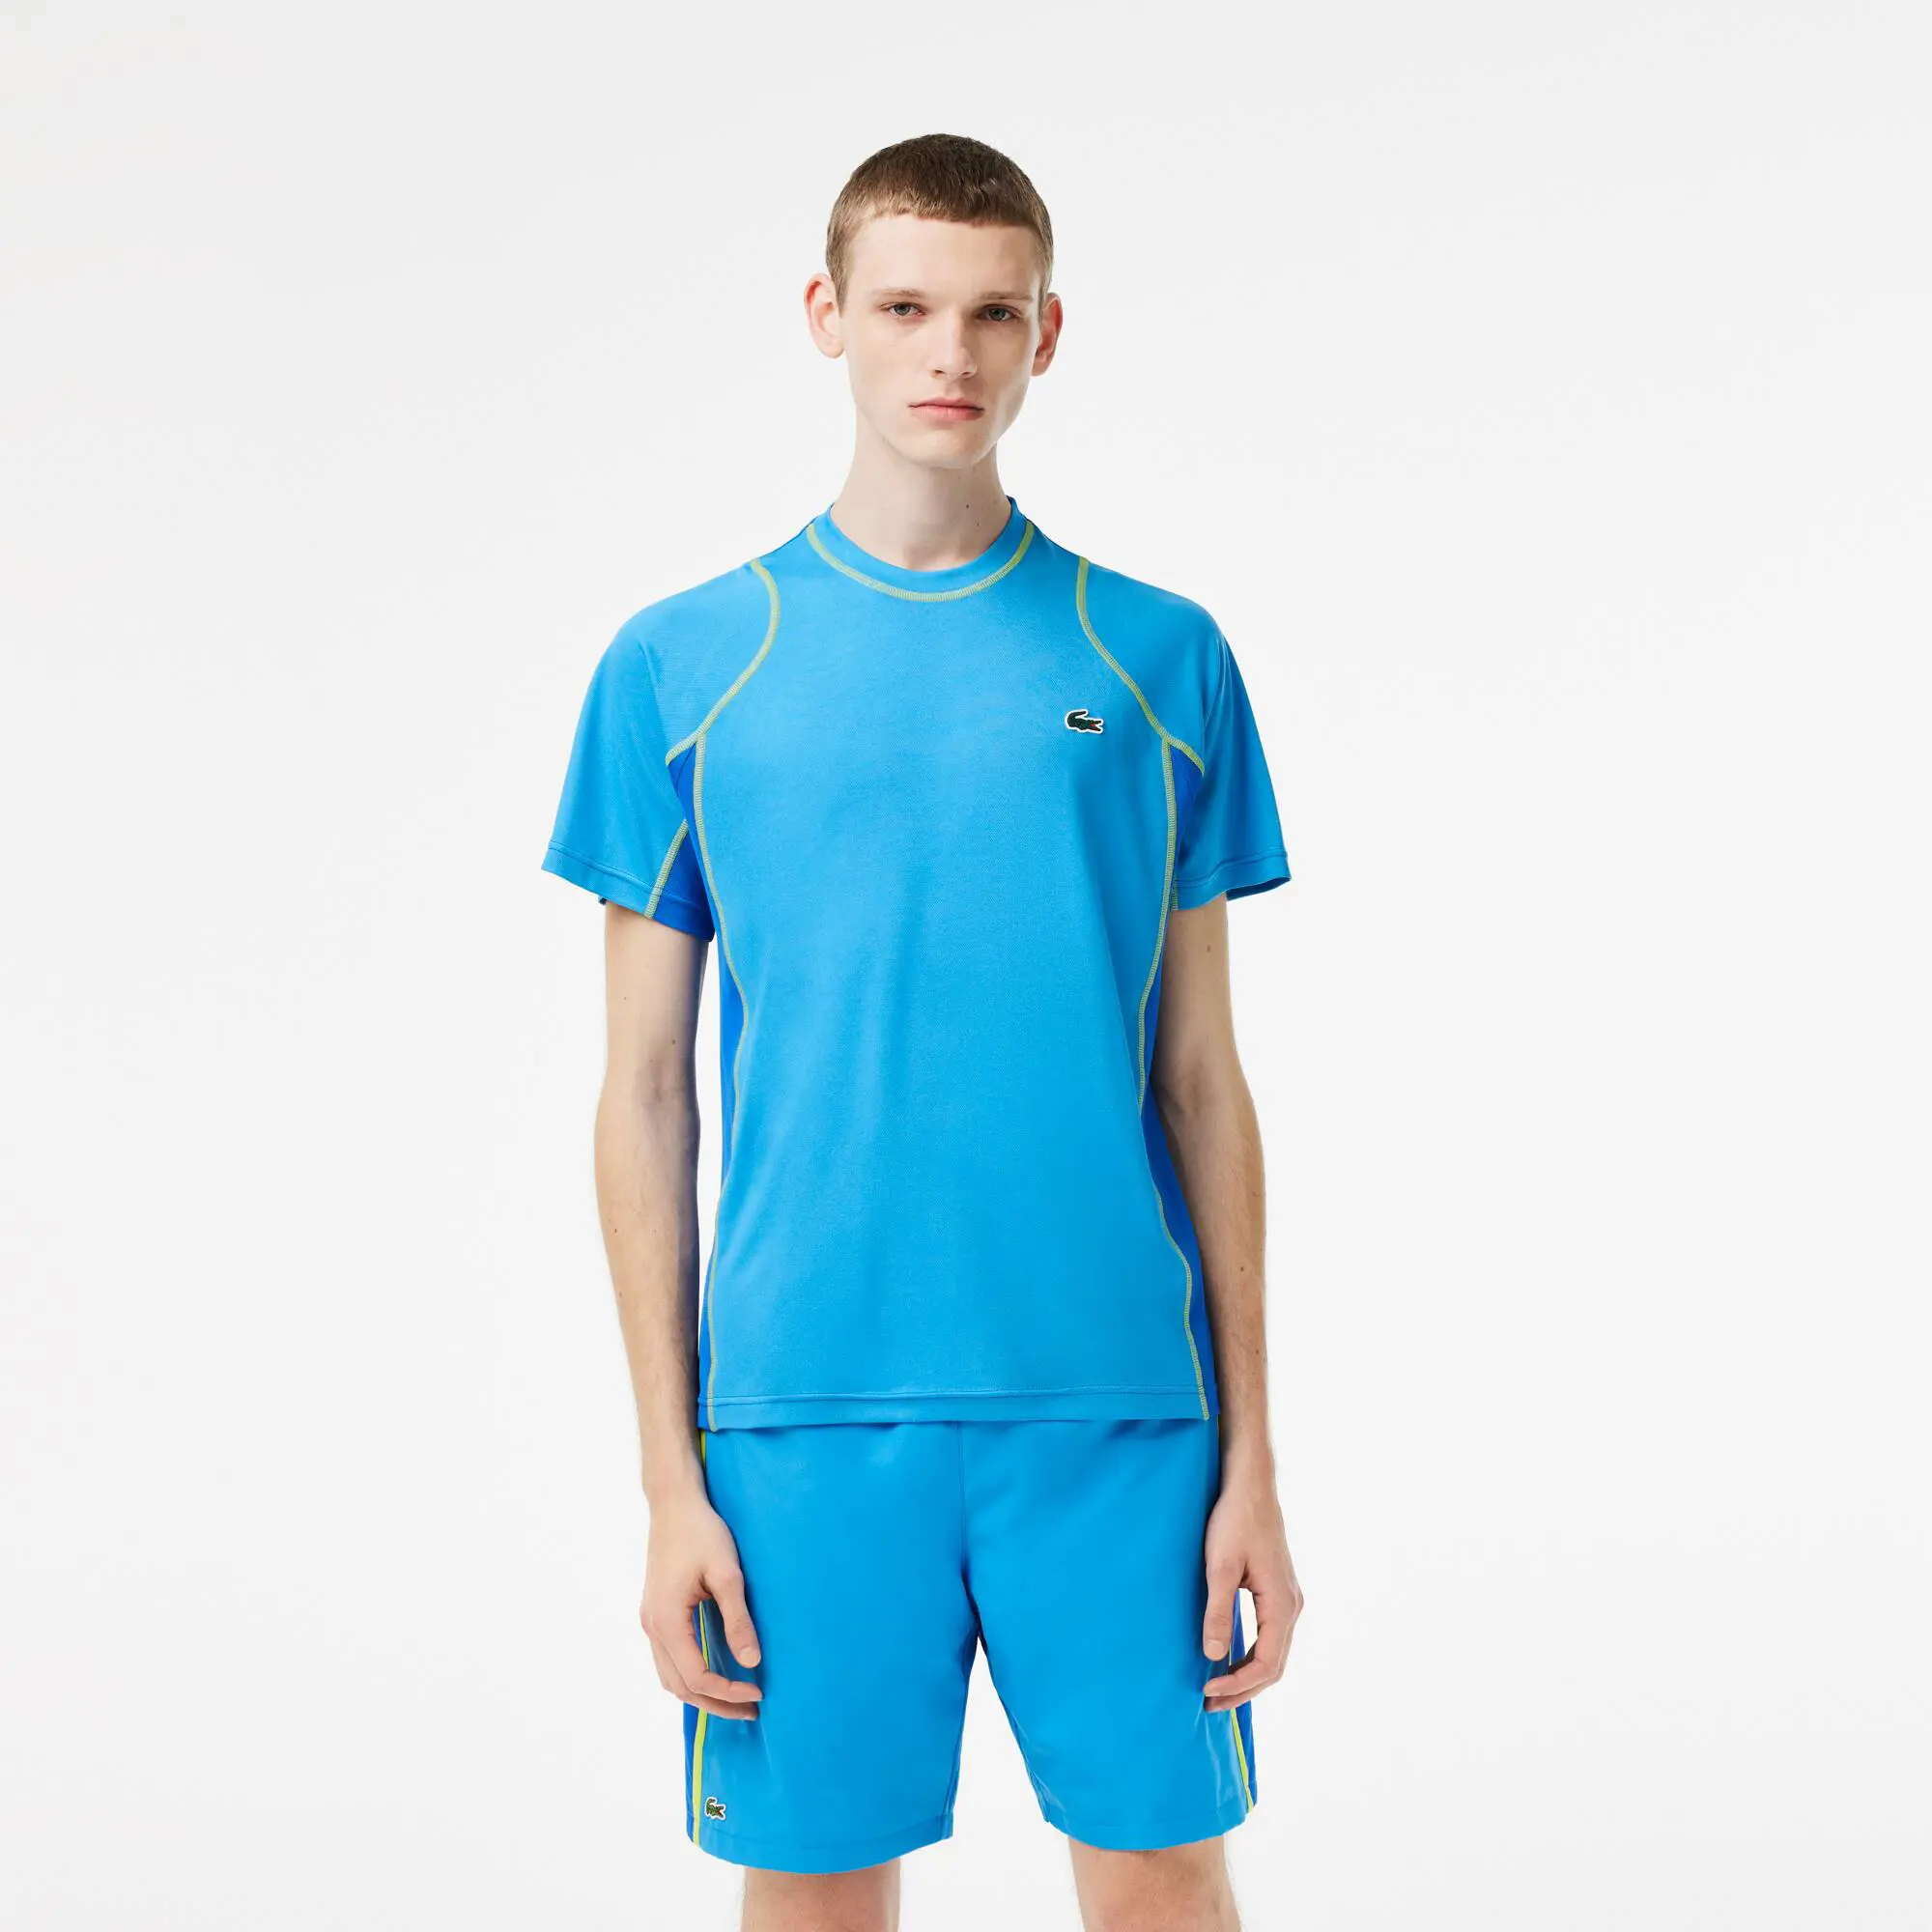 Lacoste Men’s Abrasion-Resistant Tennis T-Shirt. 1